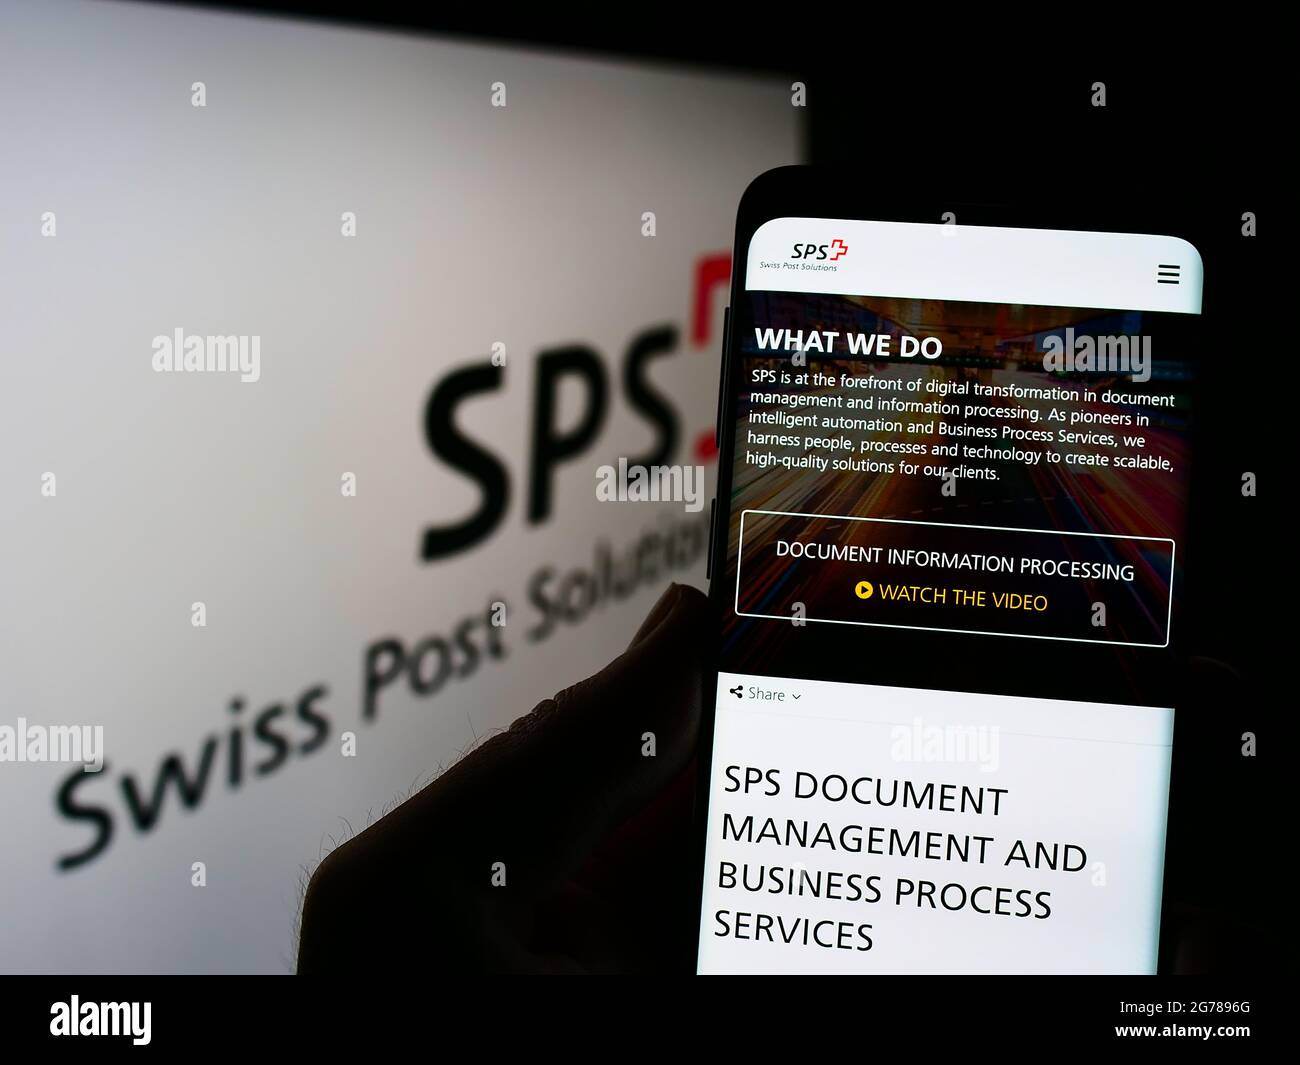 Persona che tiene il telefono con la pagina web dello studio di gestione dei documenti Swiss Post Solutions (SPS) su schermo con il logo. Mettere a fuoco il centro del display del telefono. Foto Stock